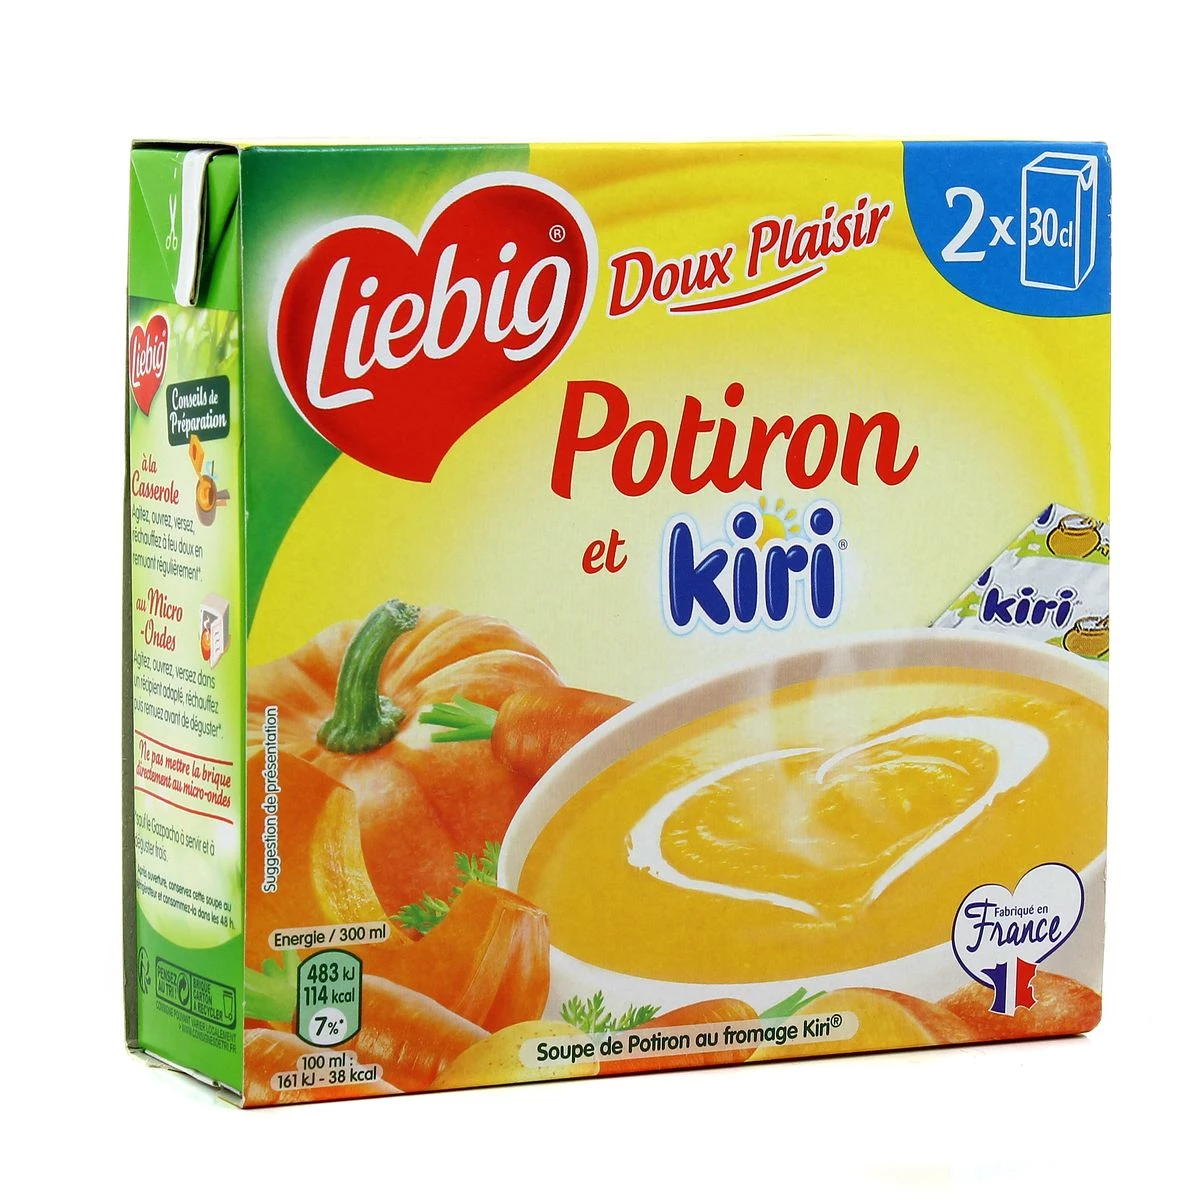 Doux Plaisir Potiron et Kiri,  2X30cl - KIRI